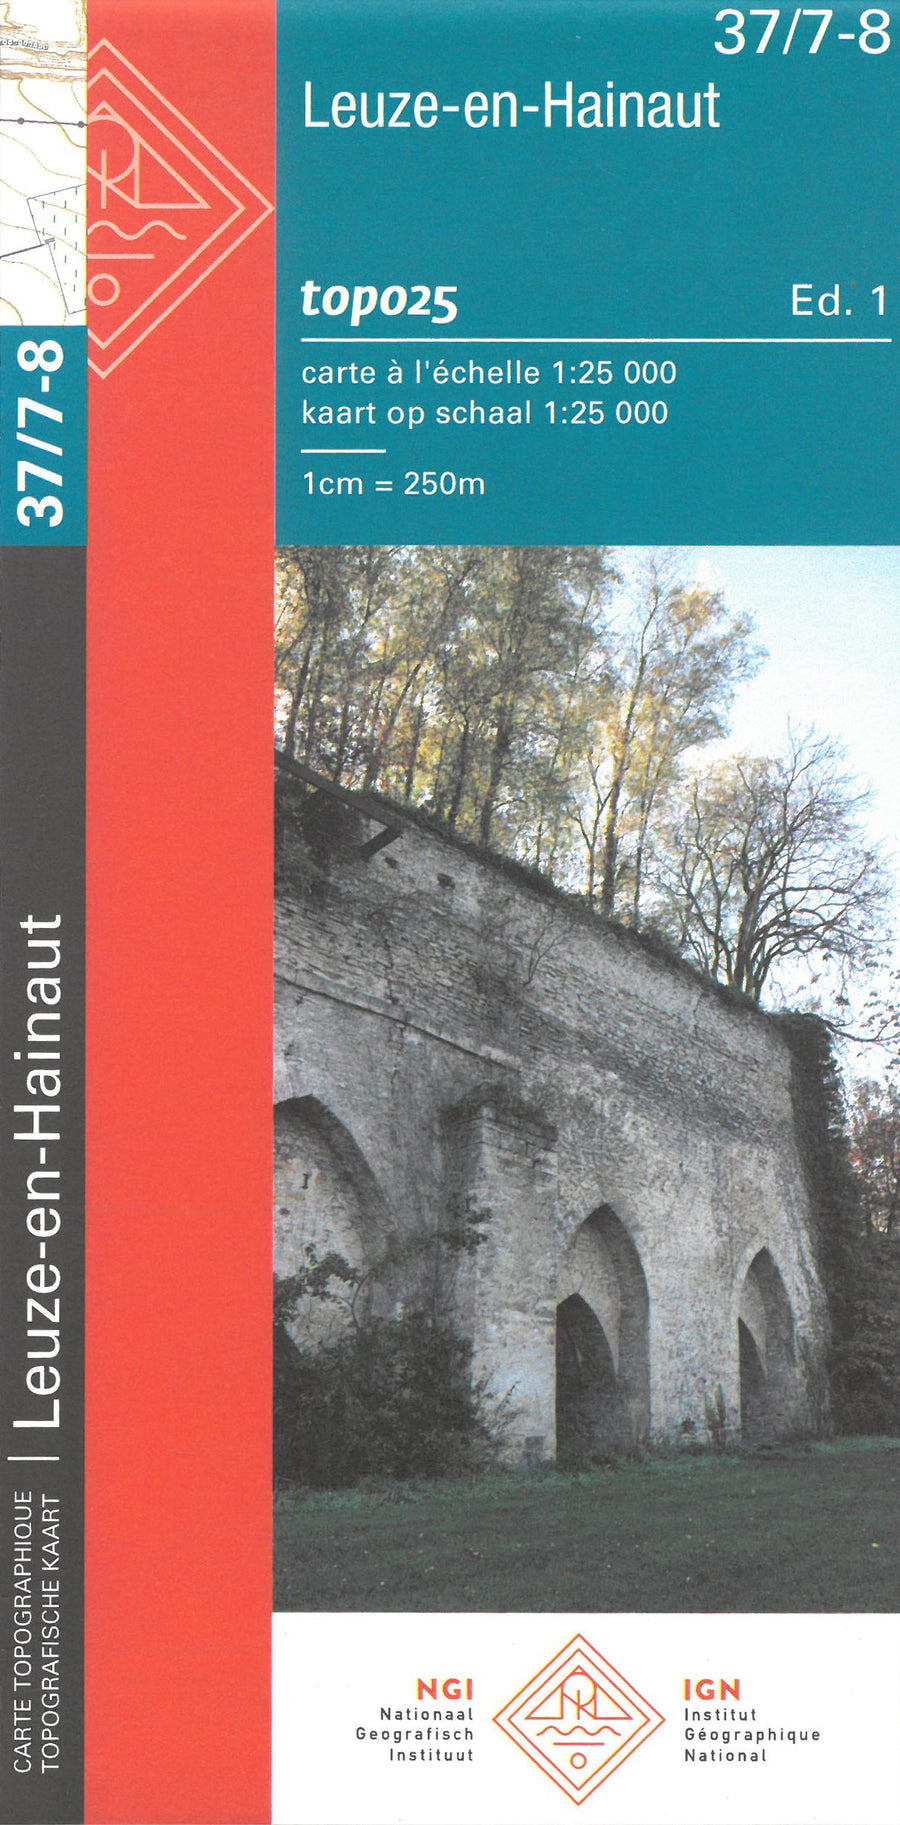 Carte topographique n° 37/7-8 - Leuze-en-Hainaut (Belgique) | NGI topo 25 carte pliée IGN Belgique 